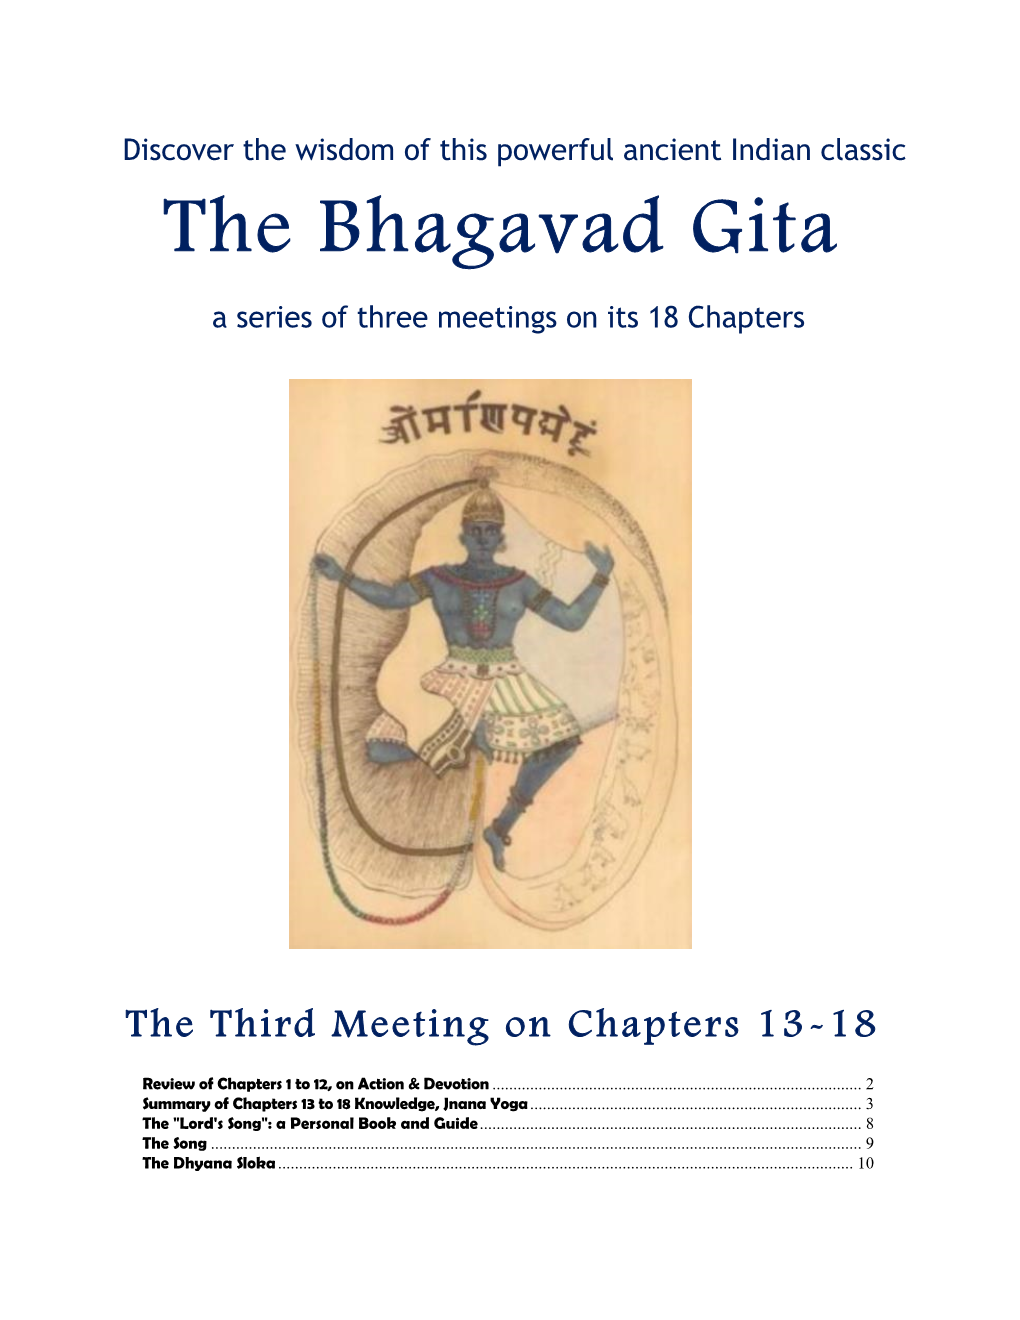 Bhagavad Gita Chapters 13-18 Knowledge